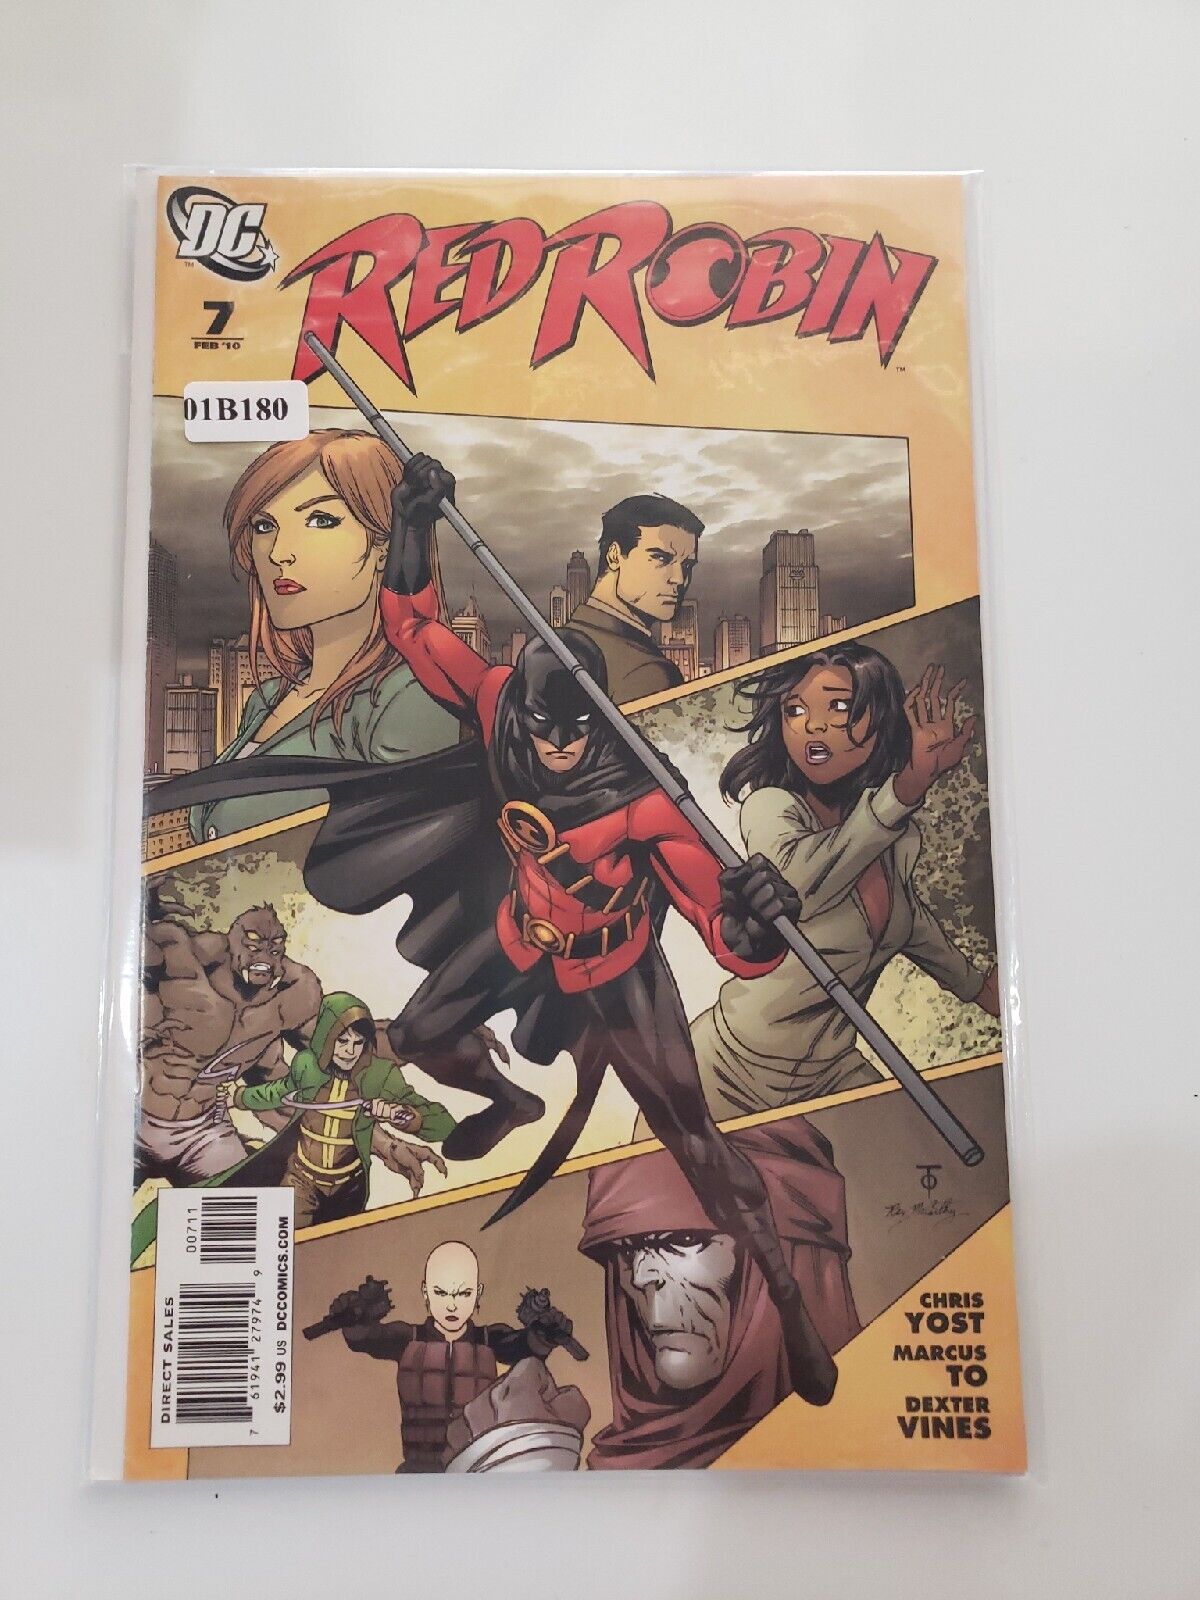 DC Comics: Red Robin (7, Feb '10)